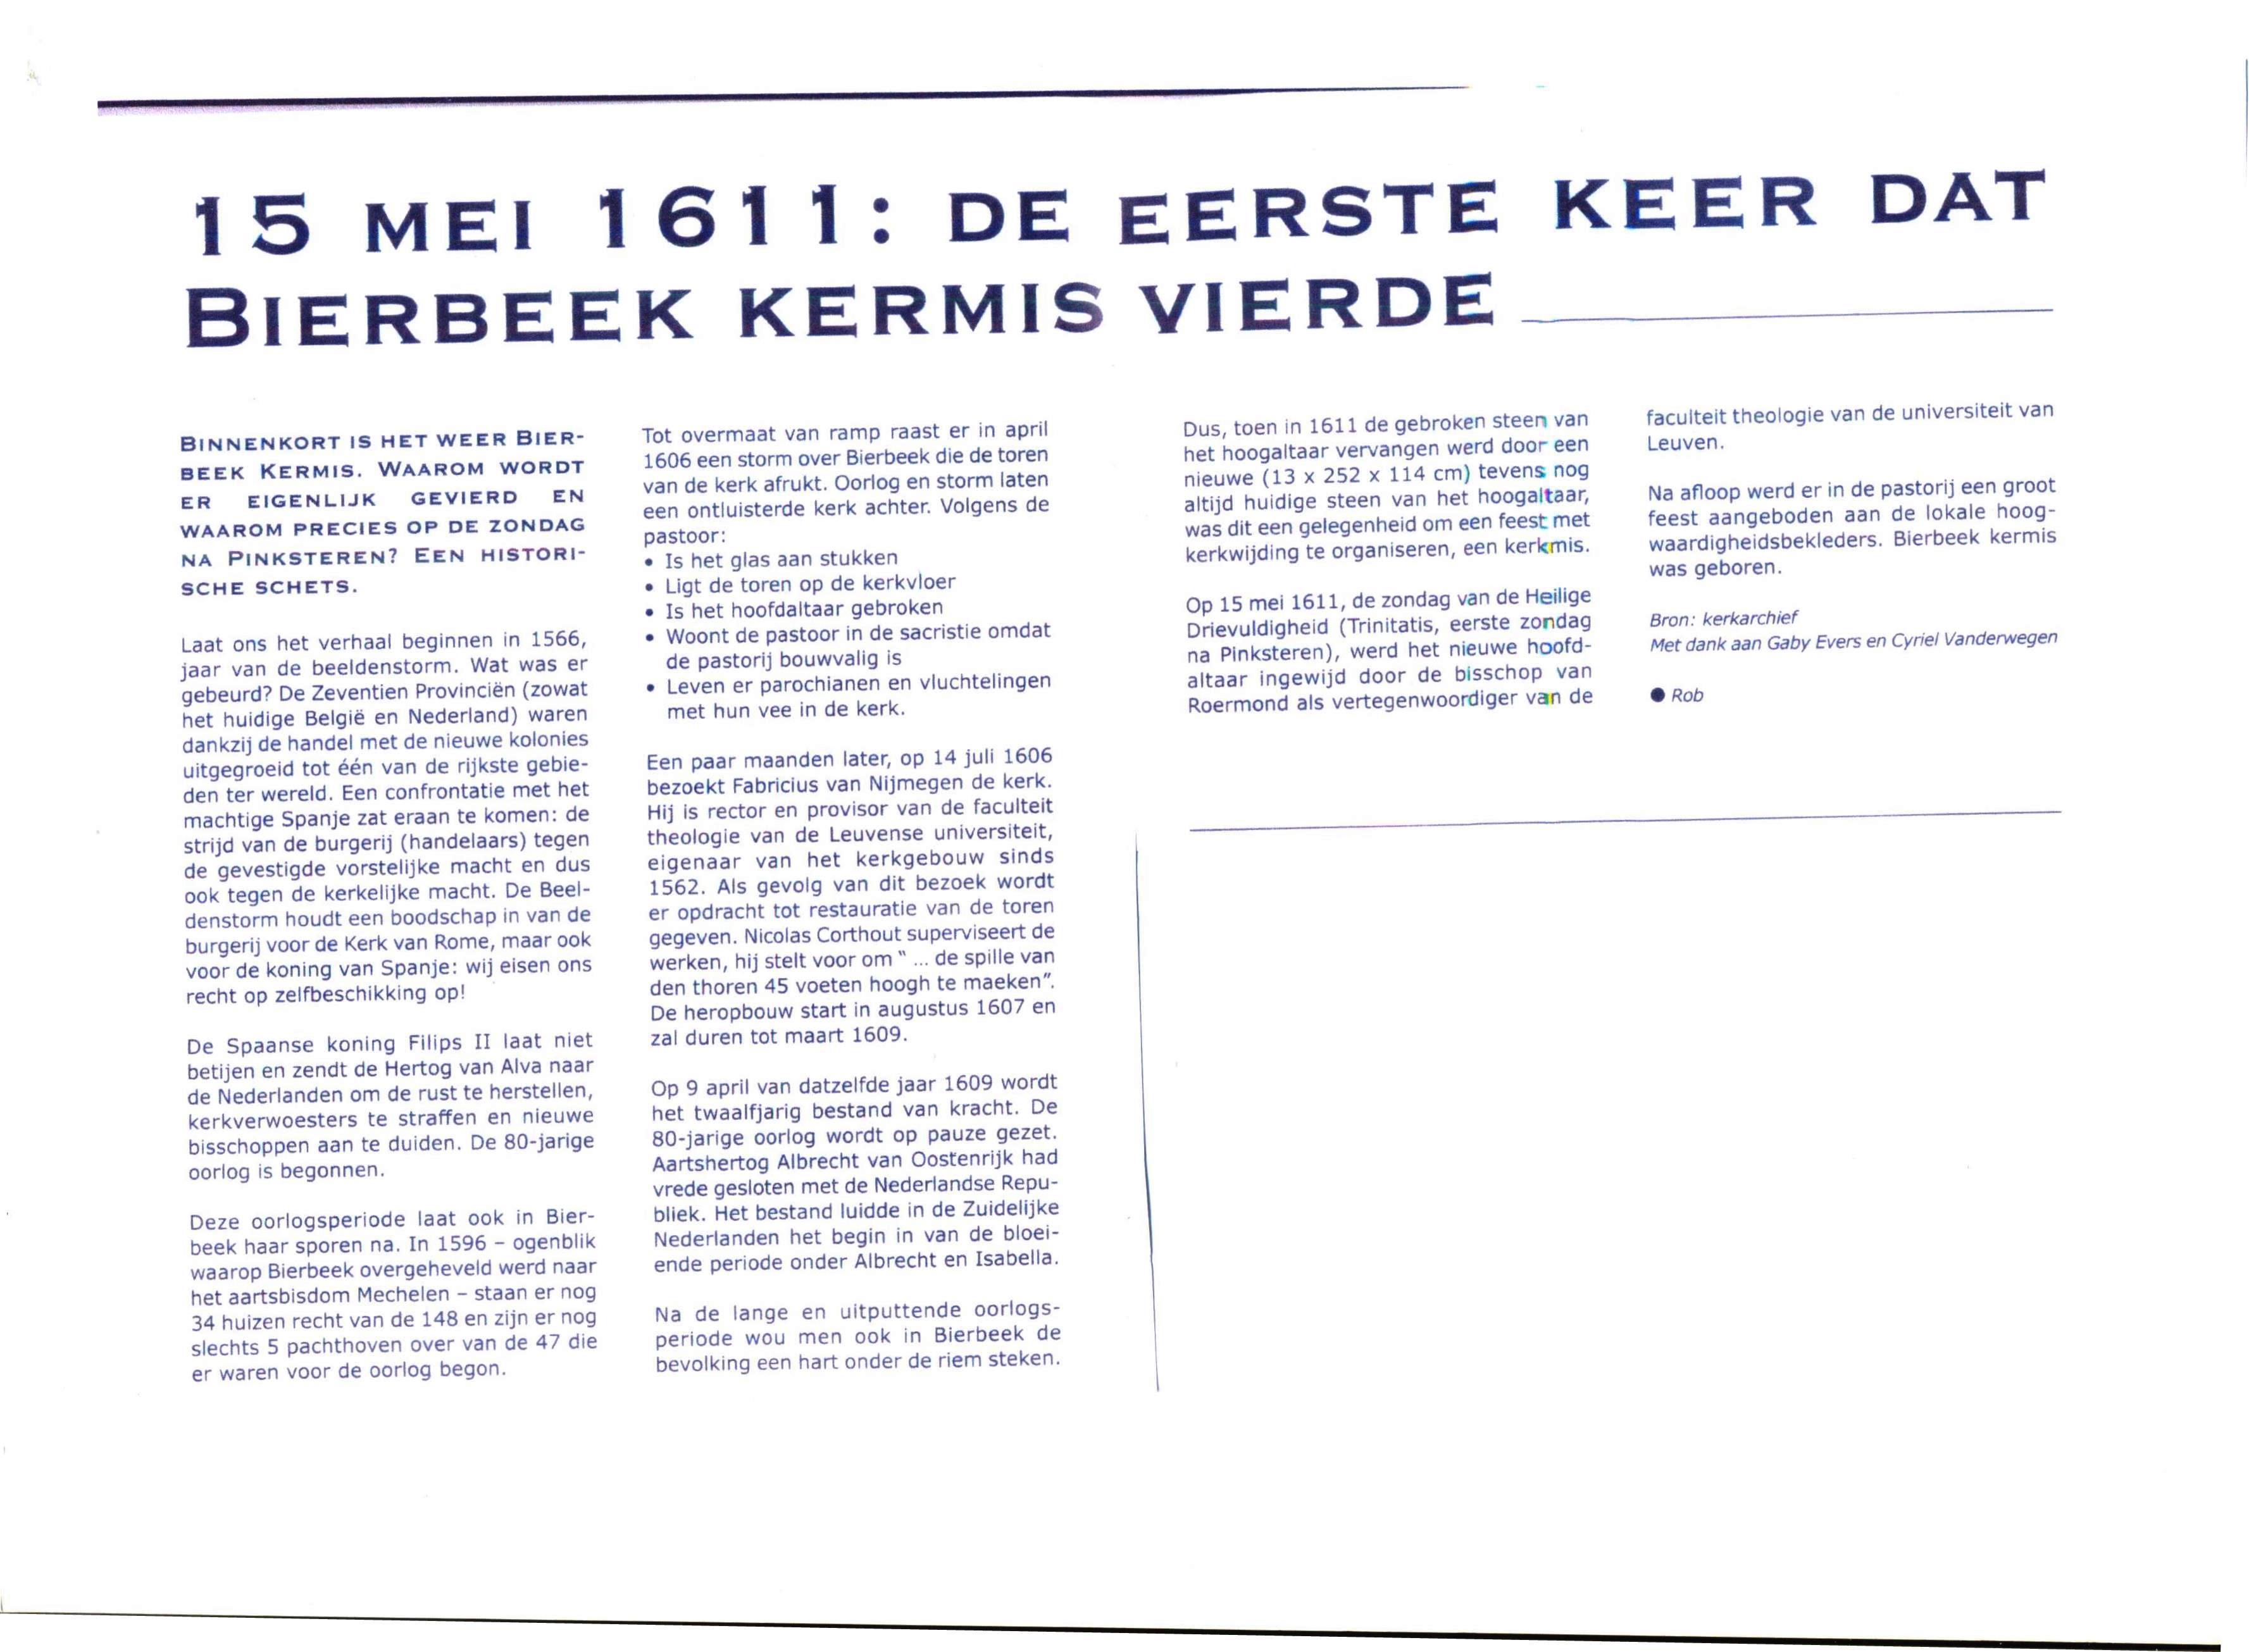 Geschiedenis-Bierbeek-kermis.jpg - 568,58 kB